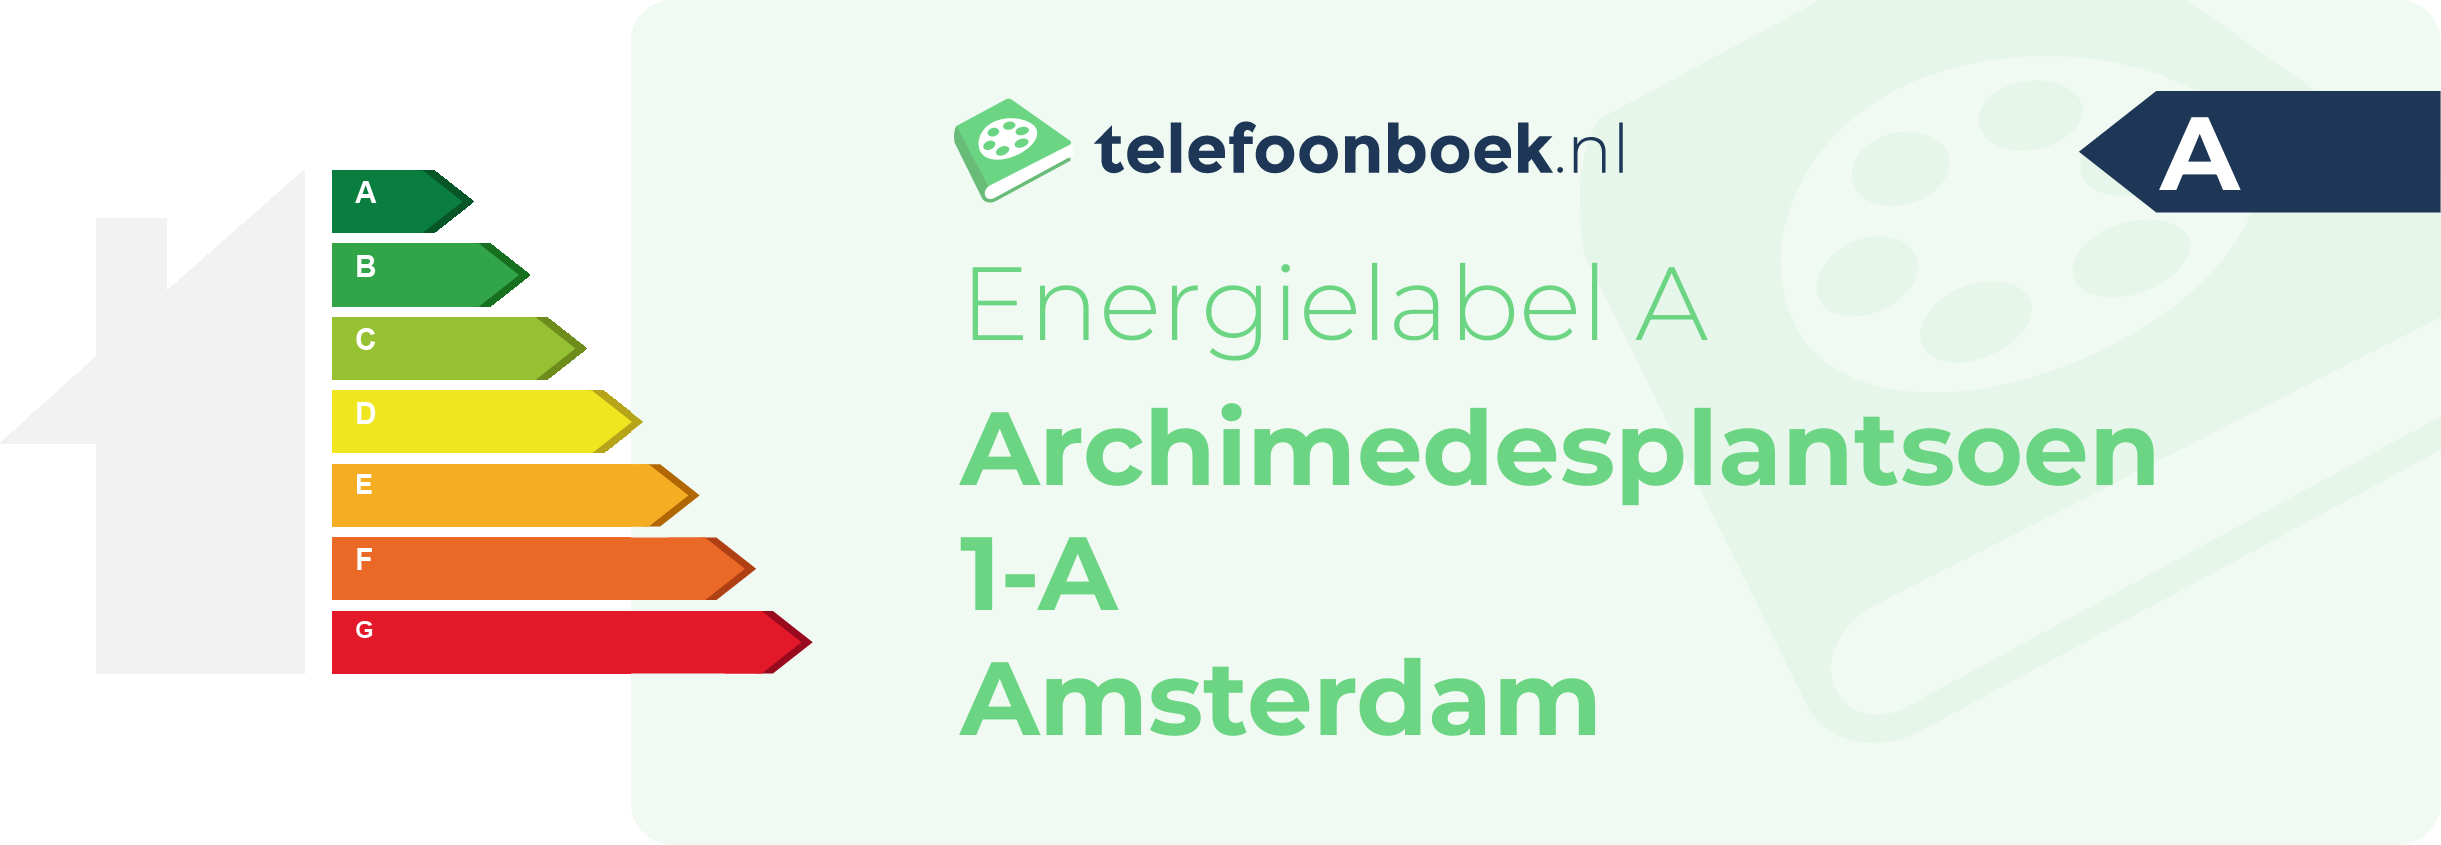 Energielabel Archimedesplantsoen 1-A Amsterdam